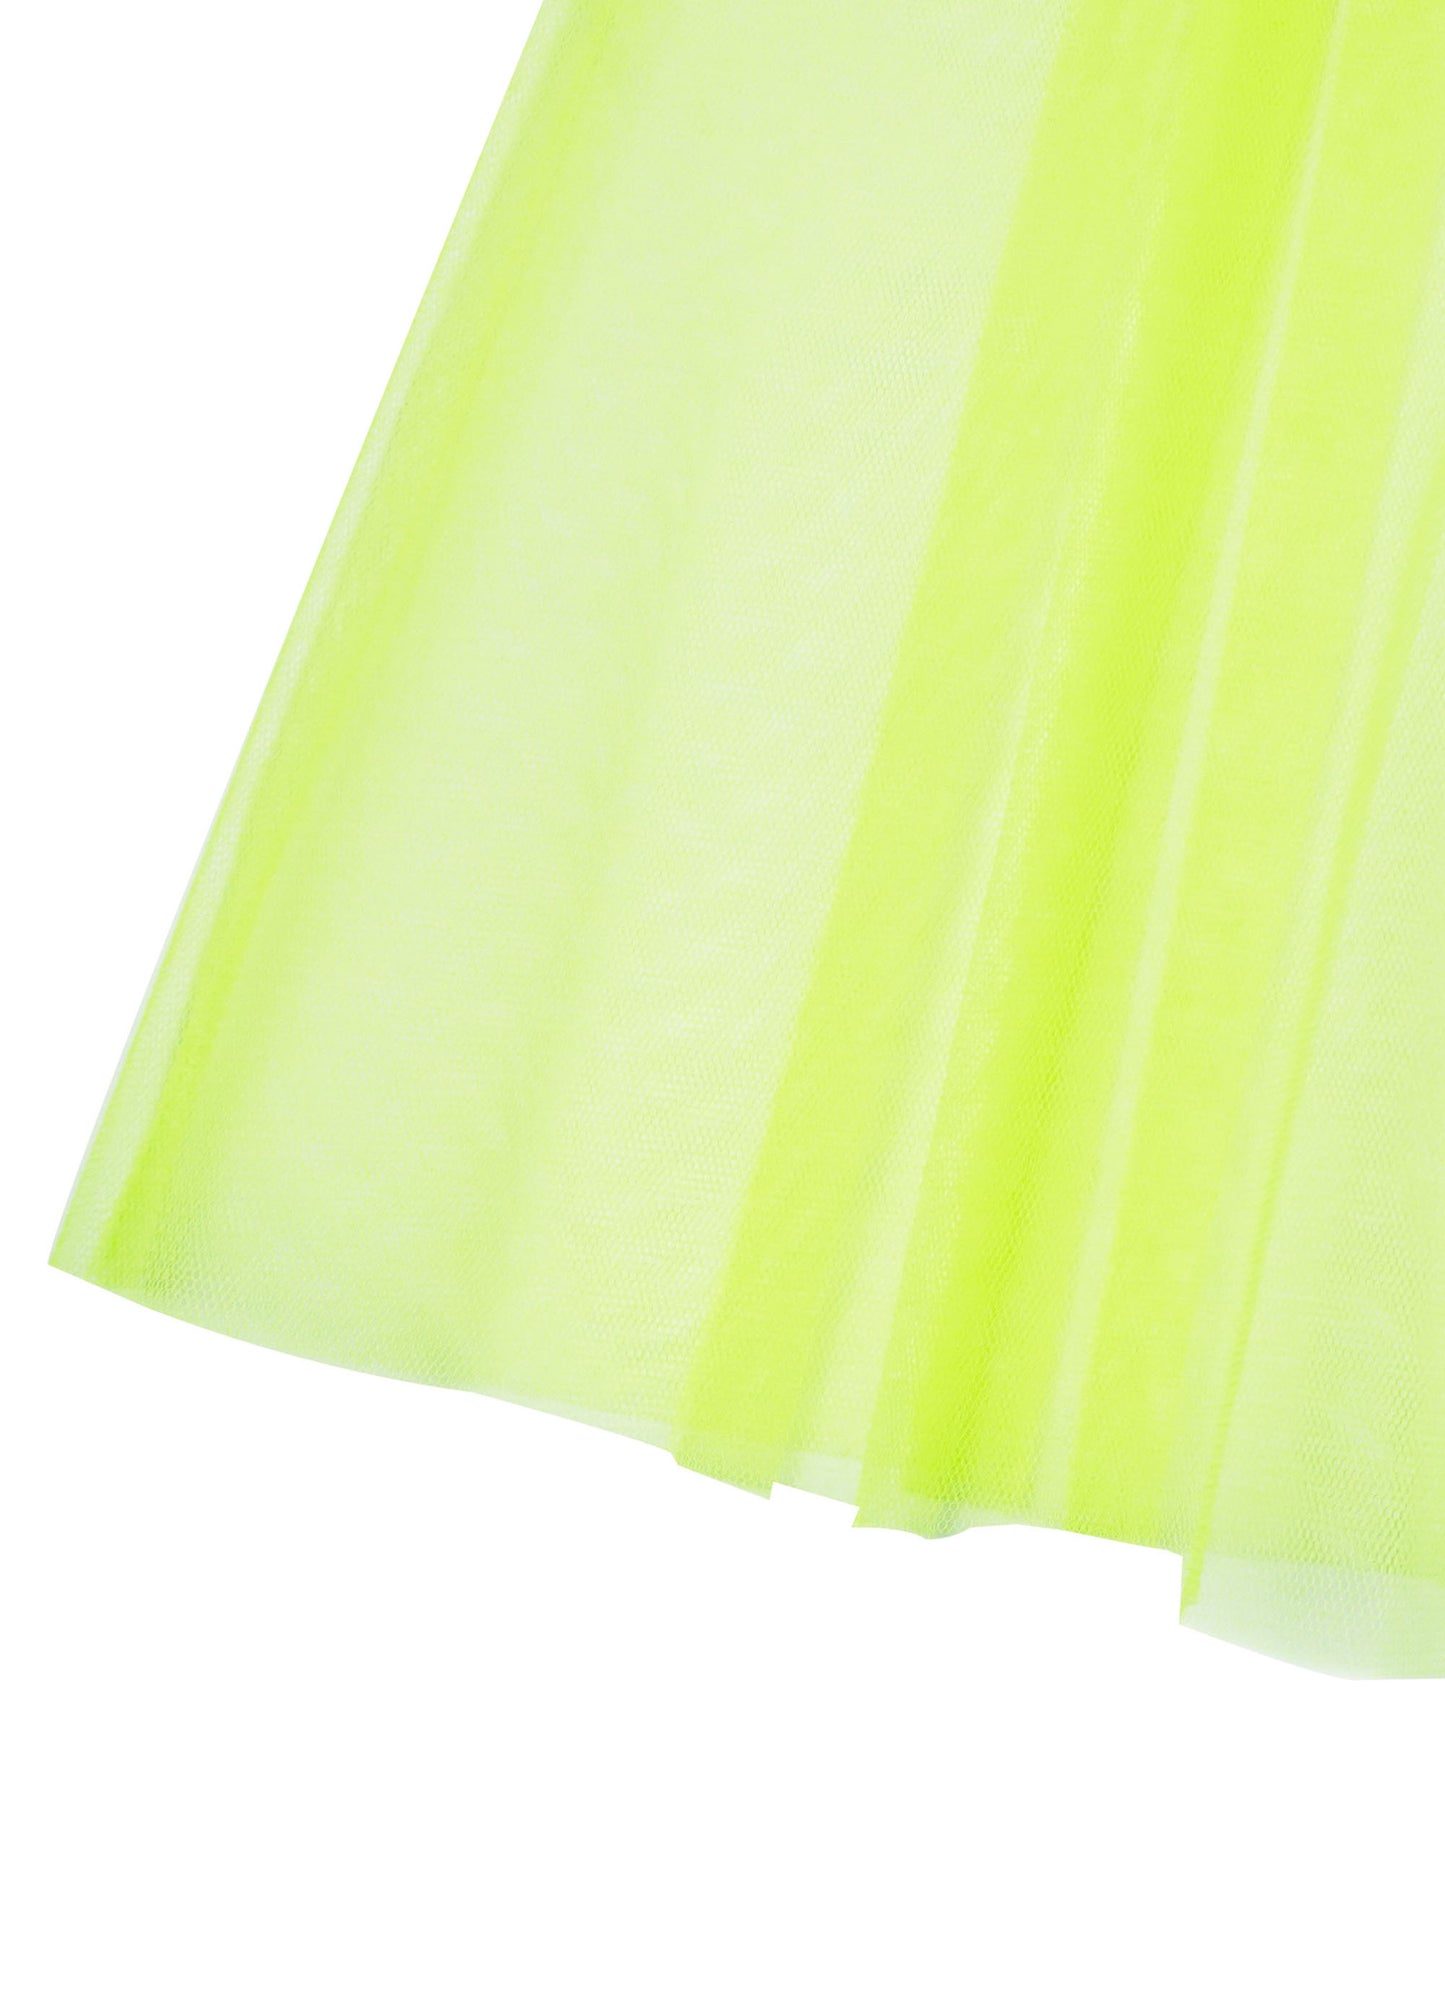 Neon Transperant Tulle Skirt